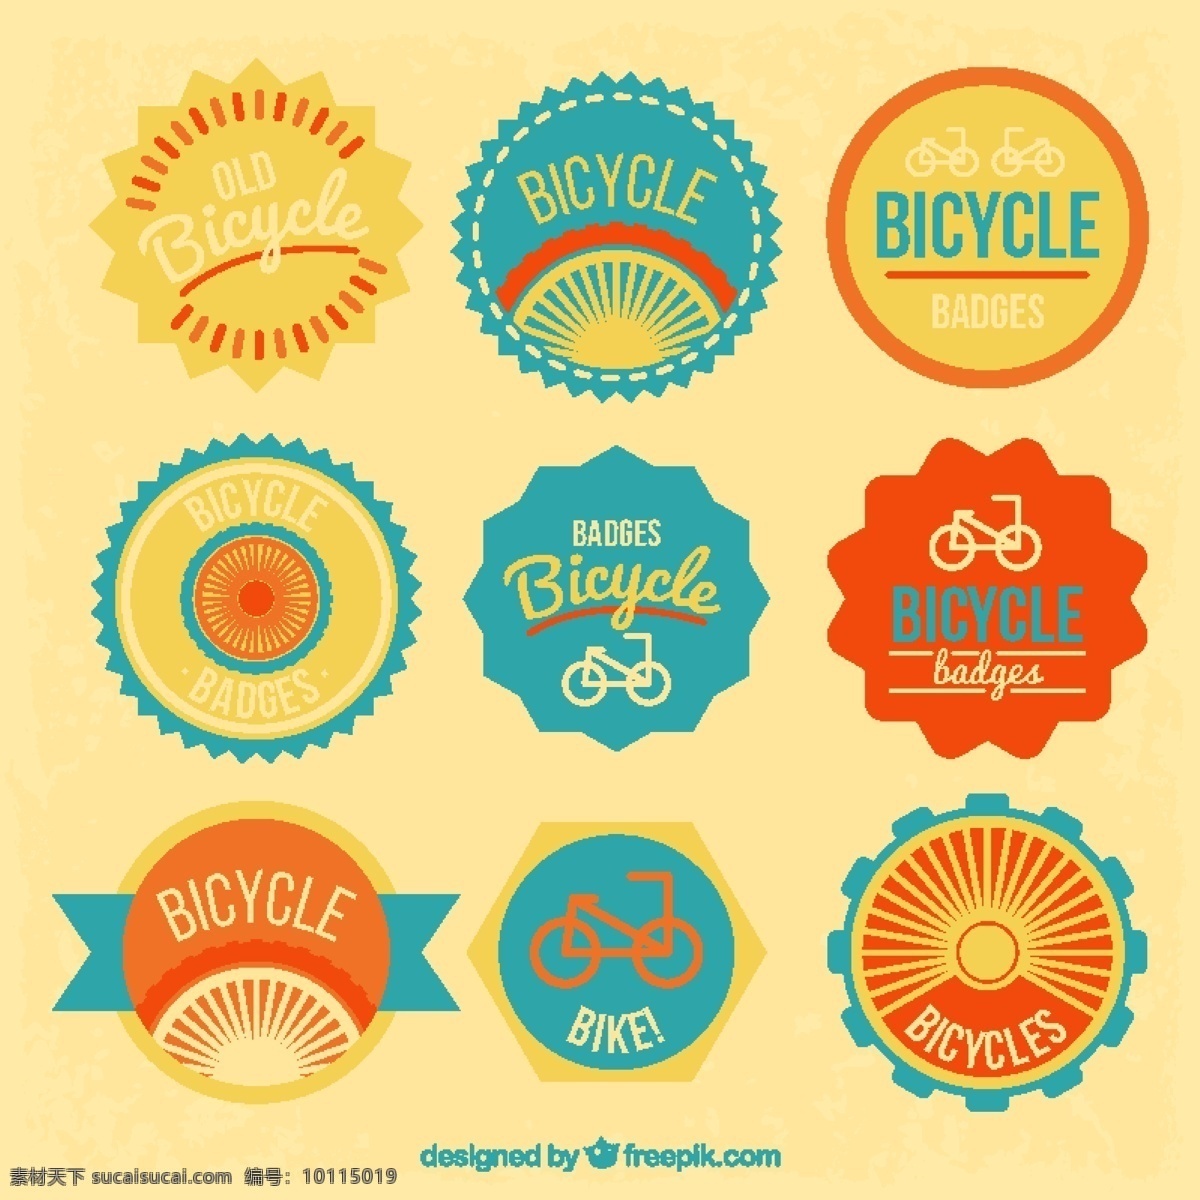 自行车徽章 标签 徽章 运动 健身 健康 贴纸 自行车 交通 外链 训练 生活 周期 骑自行车 生活方式 锻炼